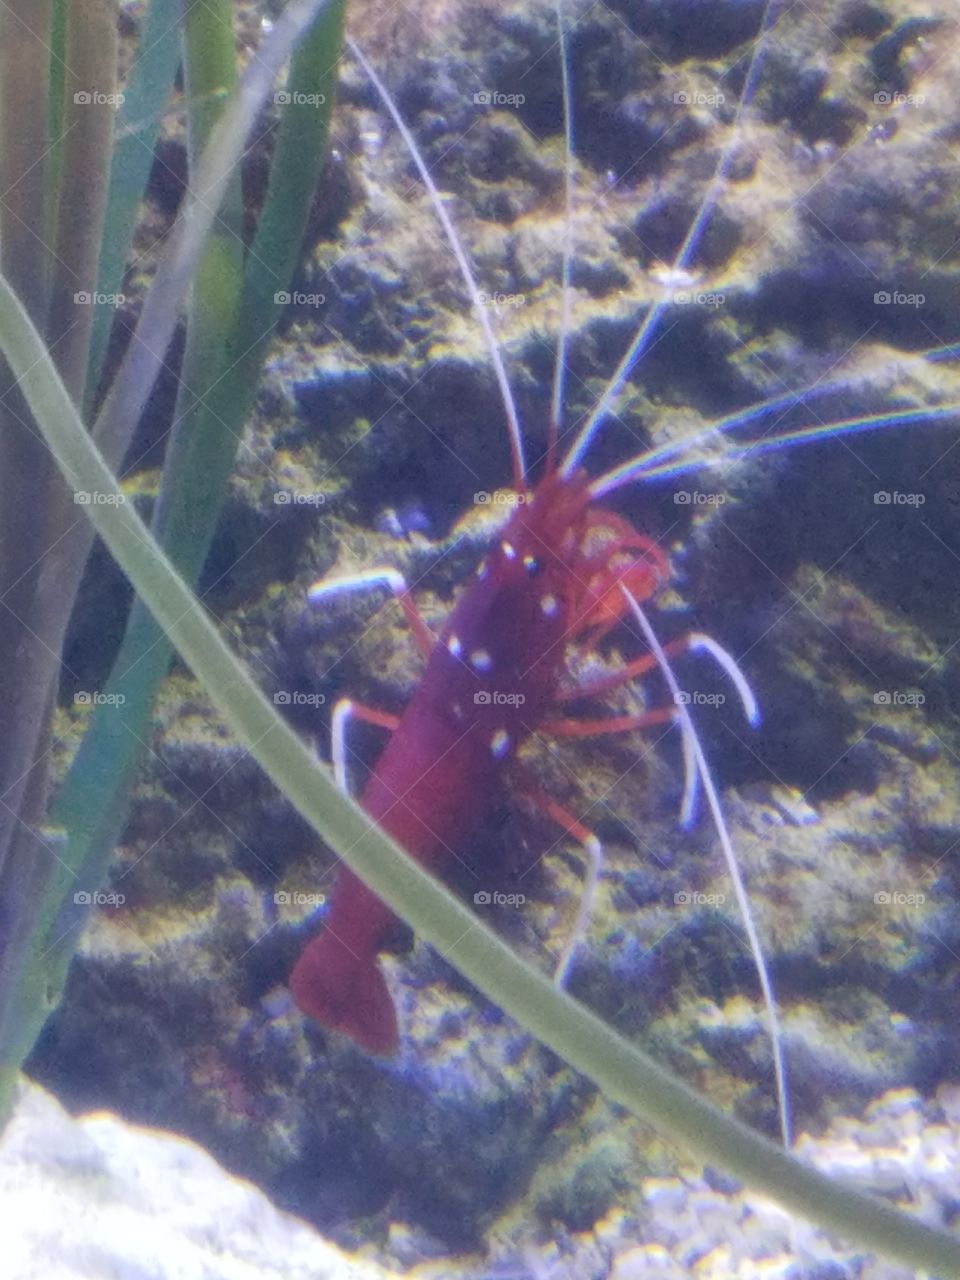 Doctor shrimp